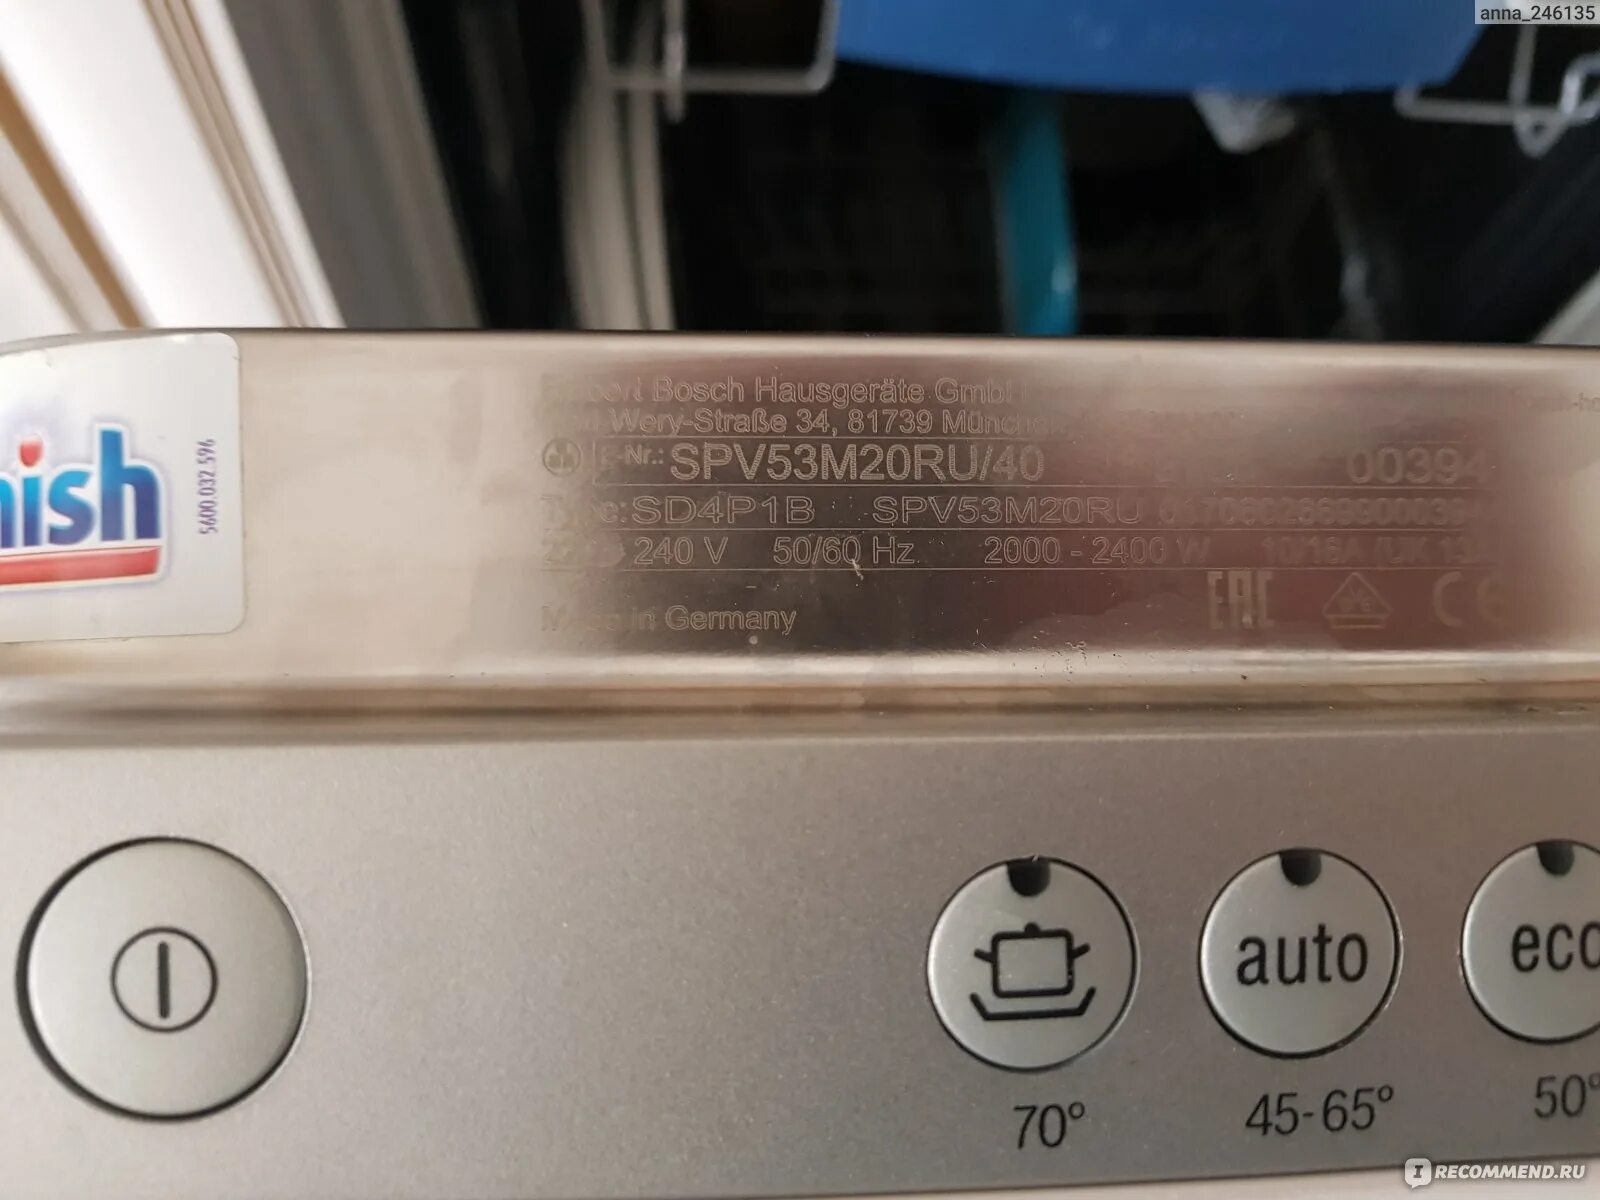 Посудомоечная машина Bosch 440mv. Посудомоечная машина бош SPV 53m 20ru встраиваемая. Посудомоечная машина Bosch SPV 69x00. Бош посудомоечная машина spv53m00ru 14. Посудомойка бош мигает